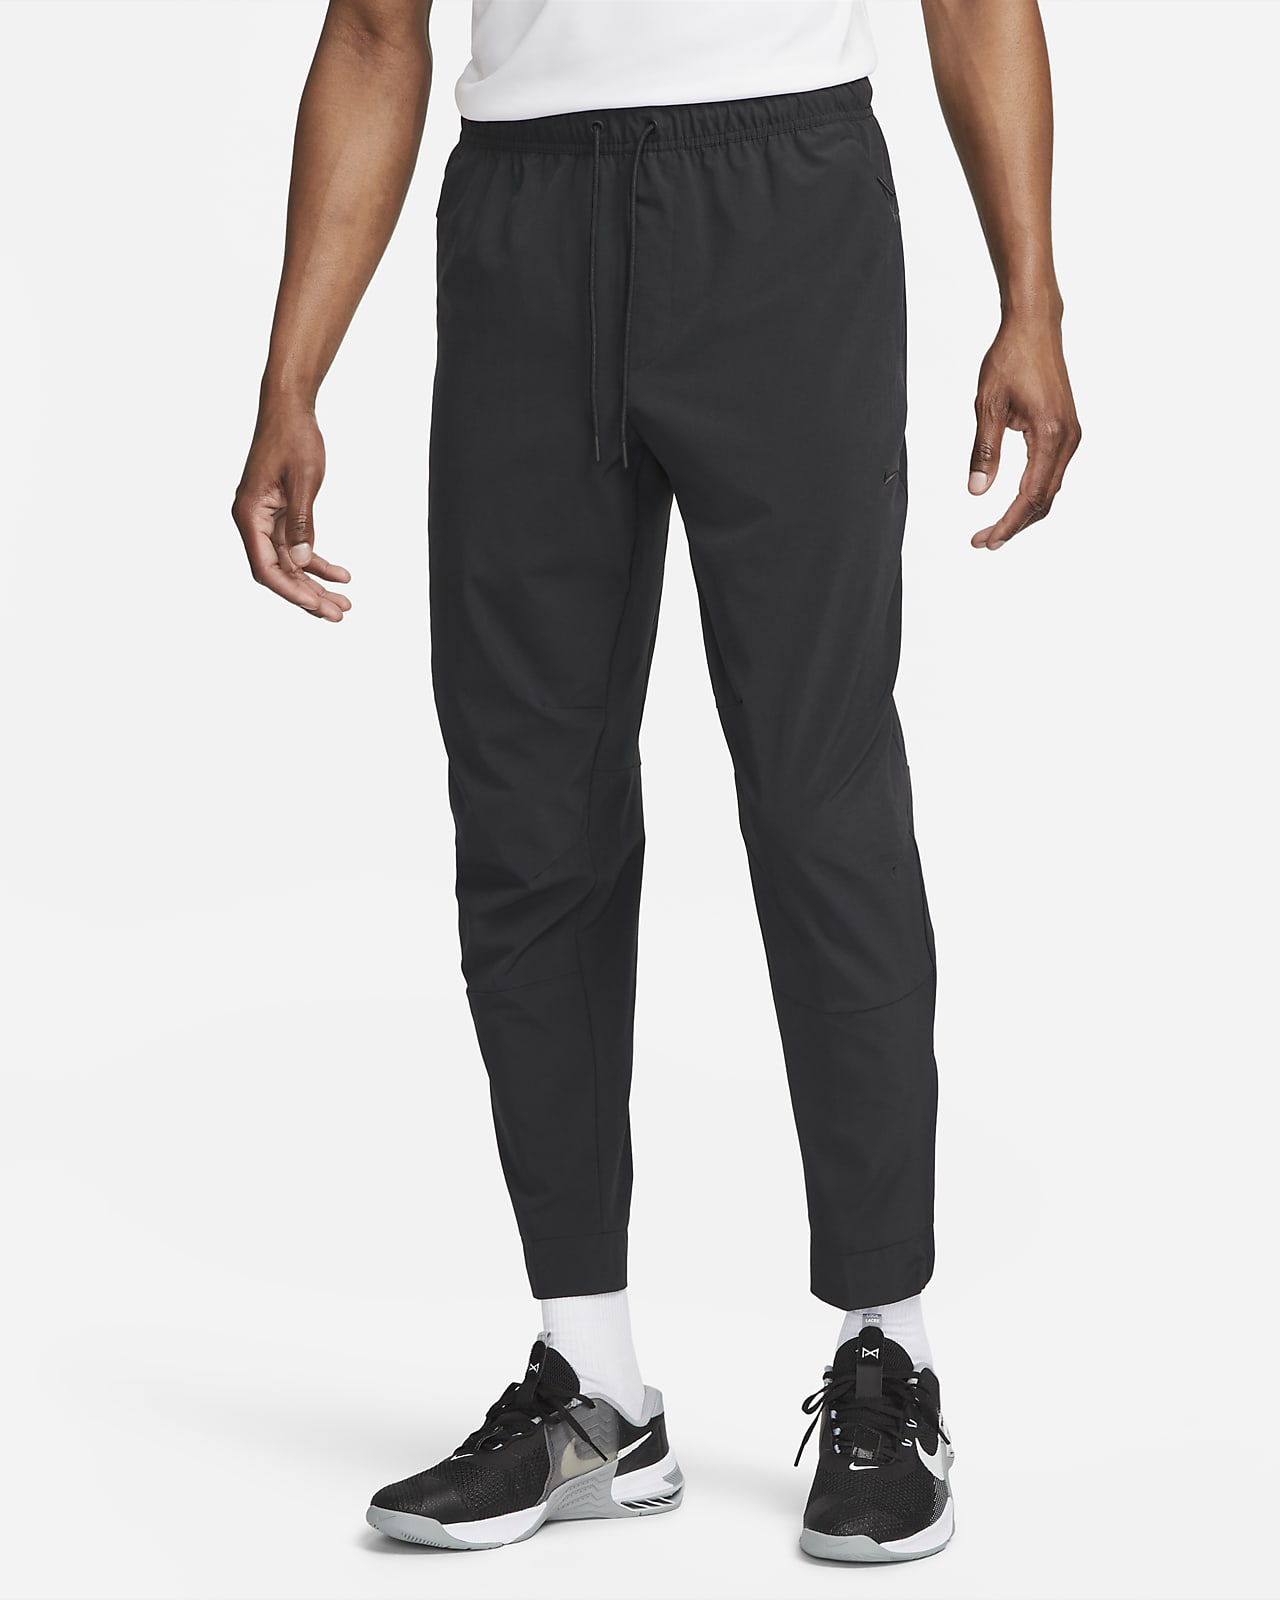 Ανδρικό ευέλικτο παντελόνι Dri-FIT με φερμουάρ στα ρεβέρ Nike Unlimited